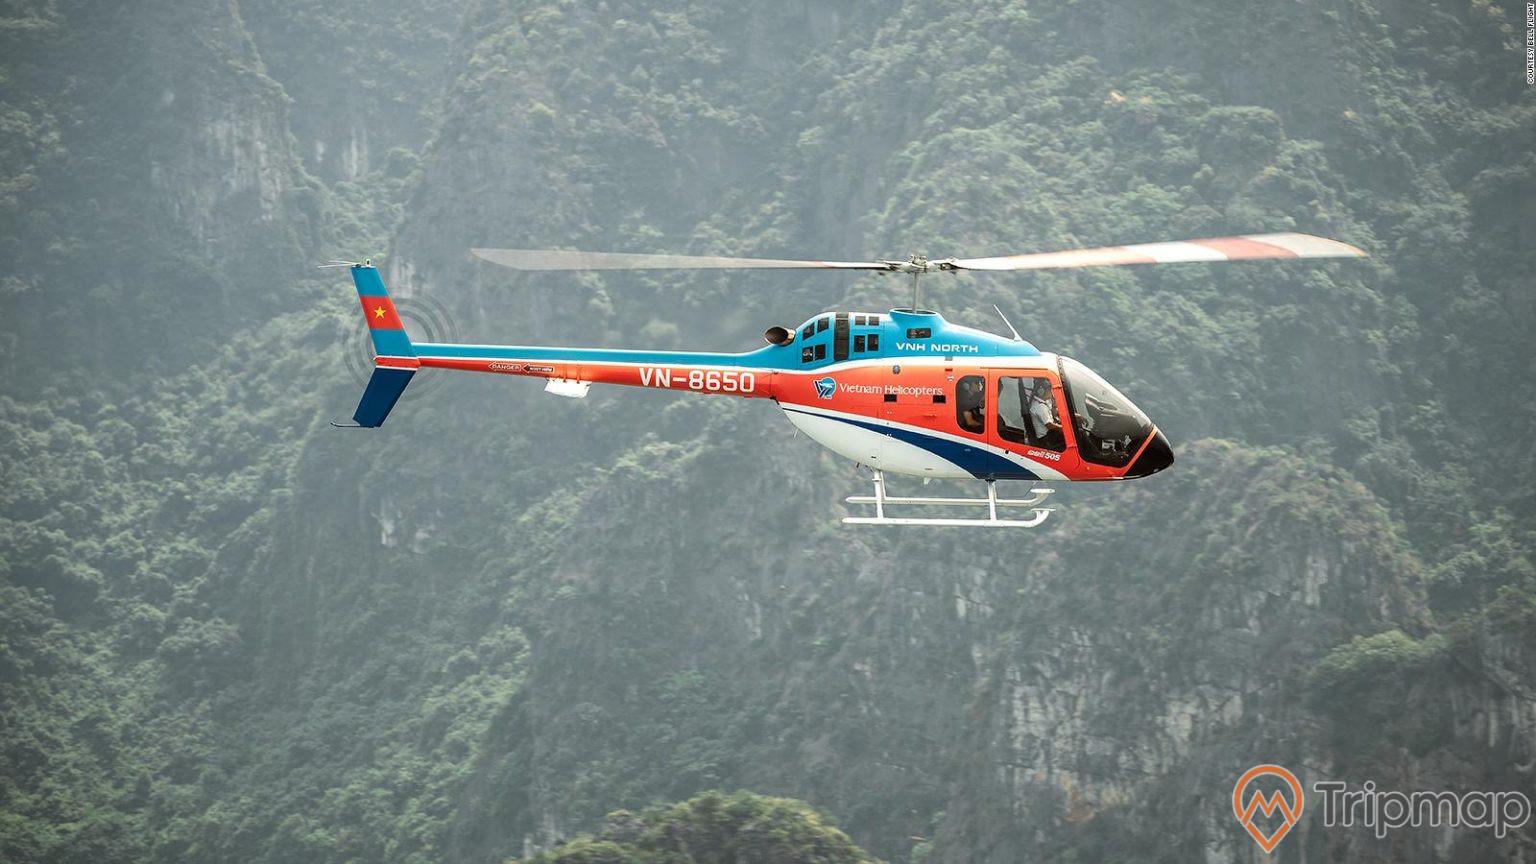 Tạm dừng hoạt động tour trực thăng ngắm cảnh tại Việt Nam sau vụ rơi máy bay trên biển